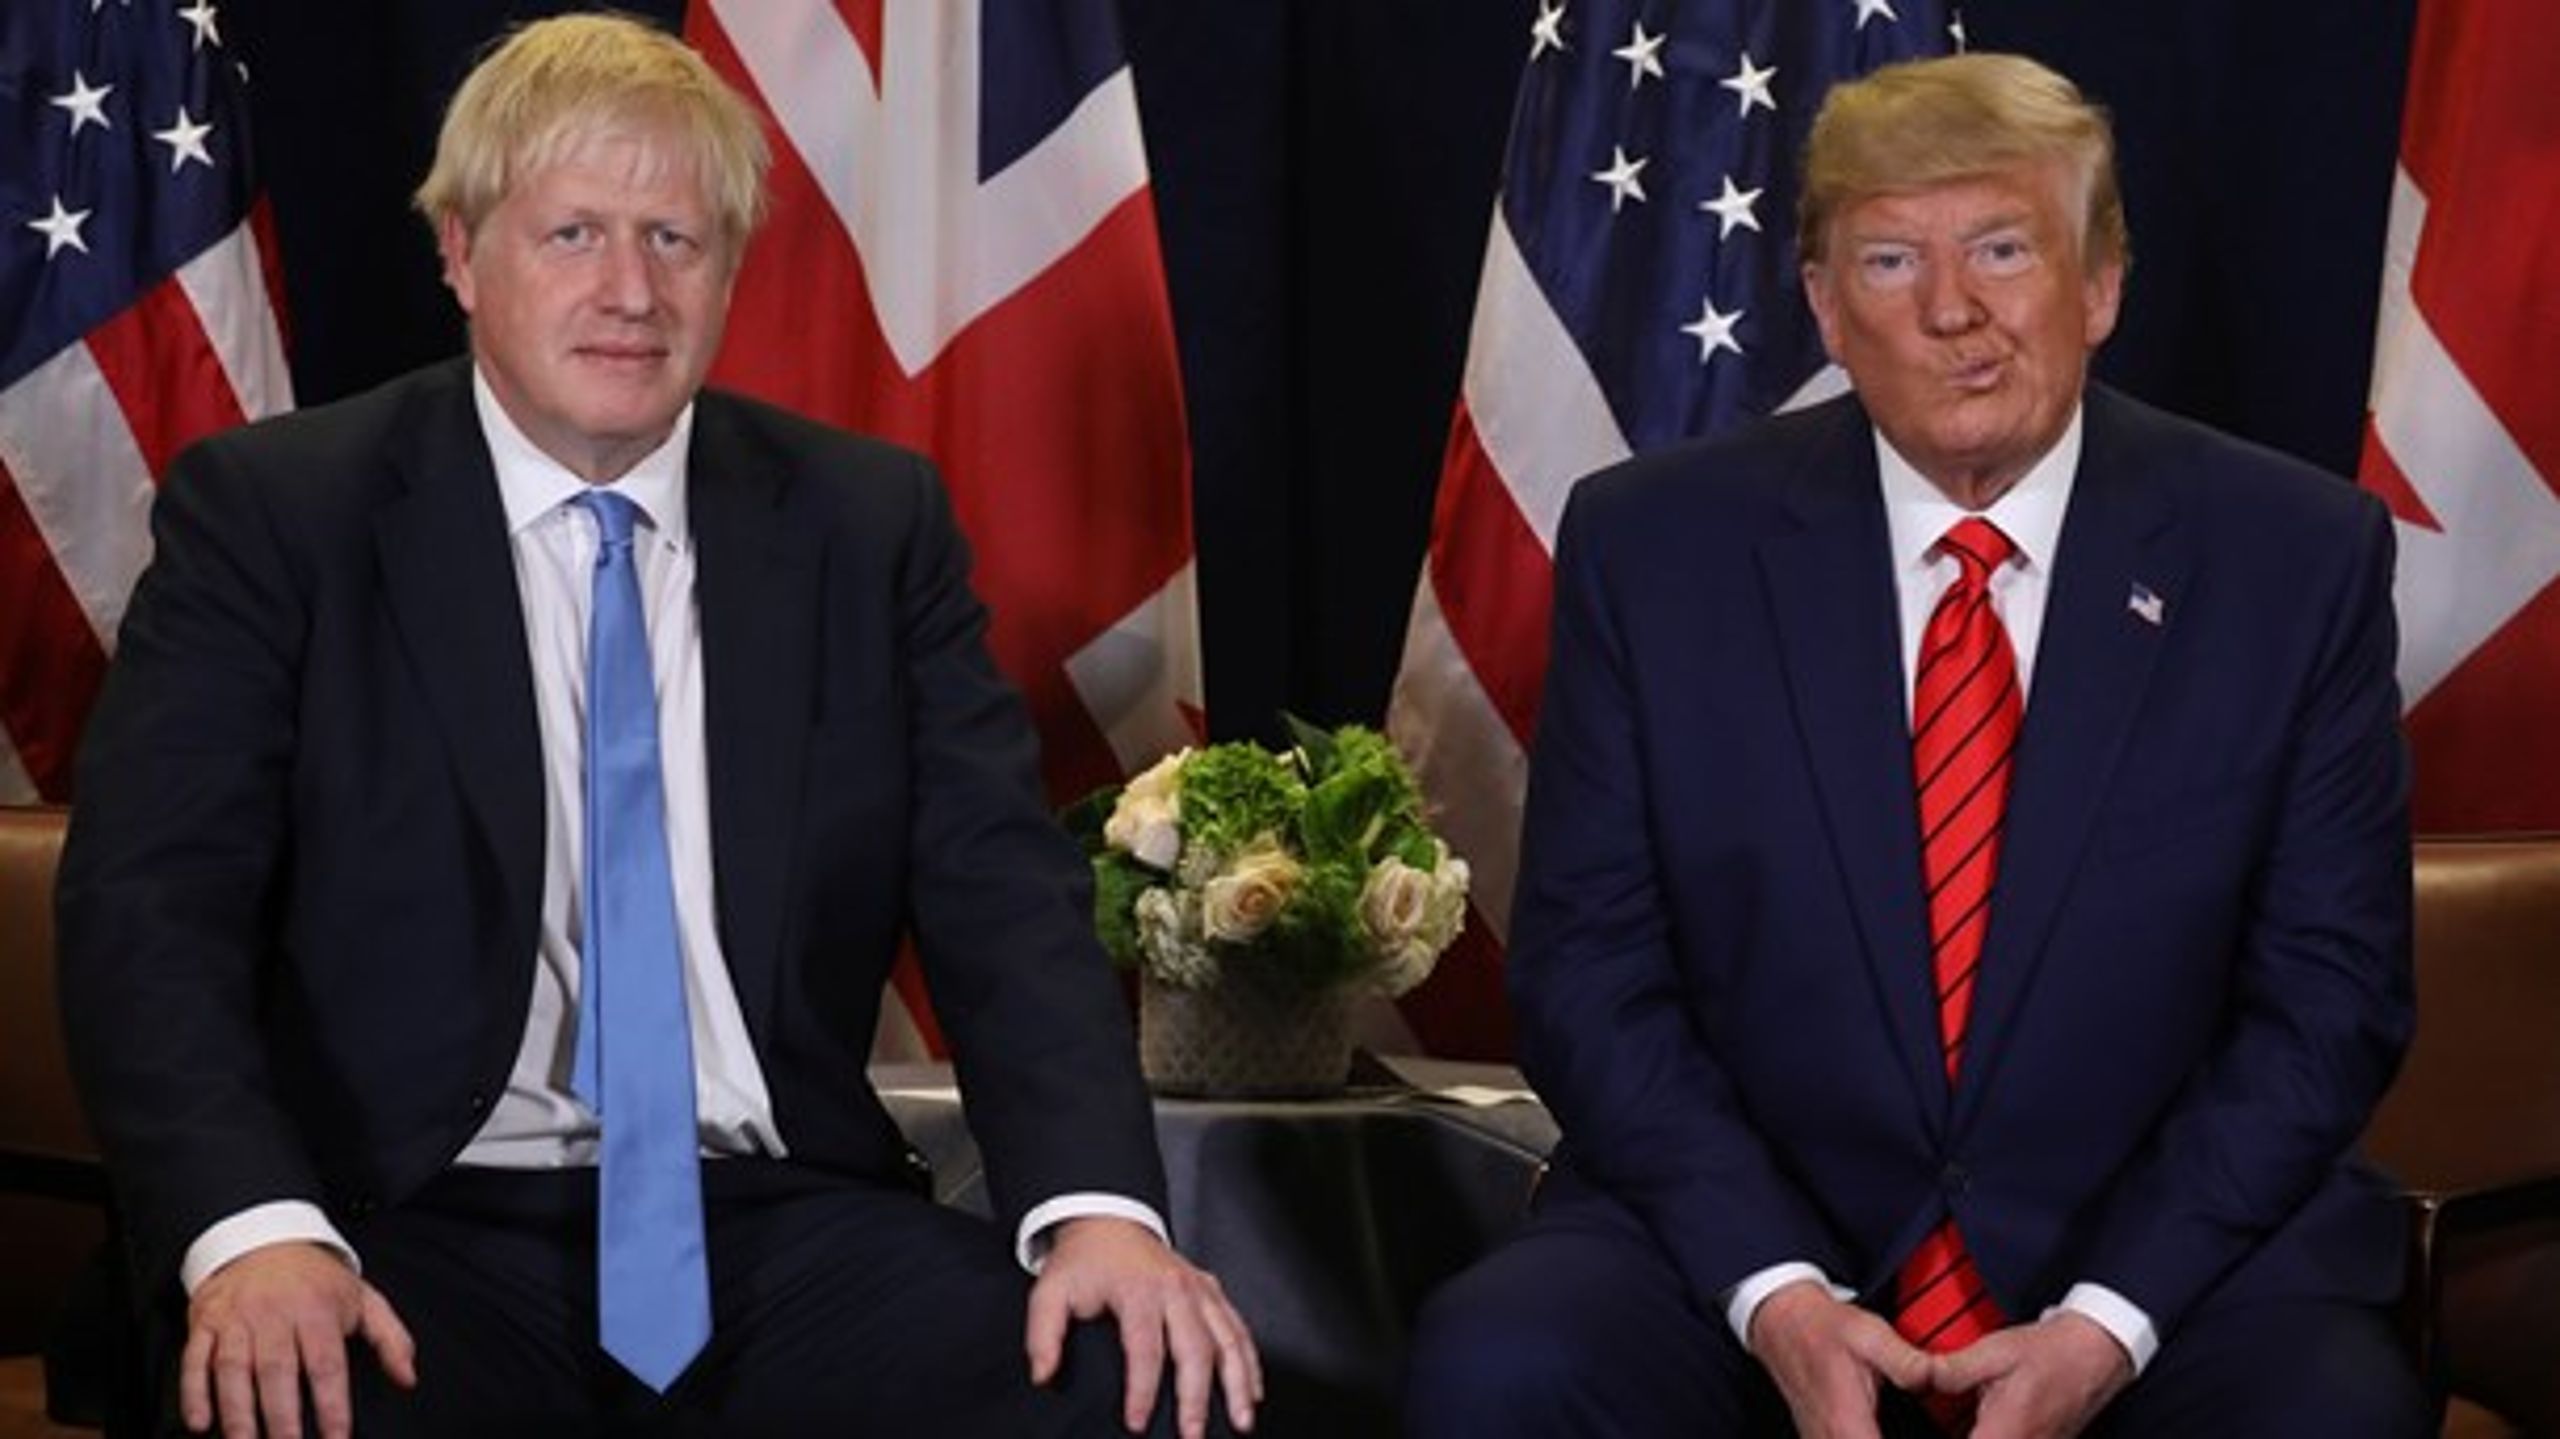 Amerikanske og britiske politikere er gået fra at være forbilleder til vrangbilleder. De to lande har&nbsp;en klovn og en selvmordsbomber som nationale politiske ledere, mener David Trads.